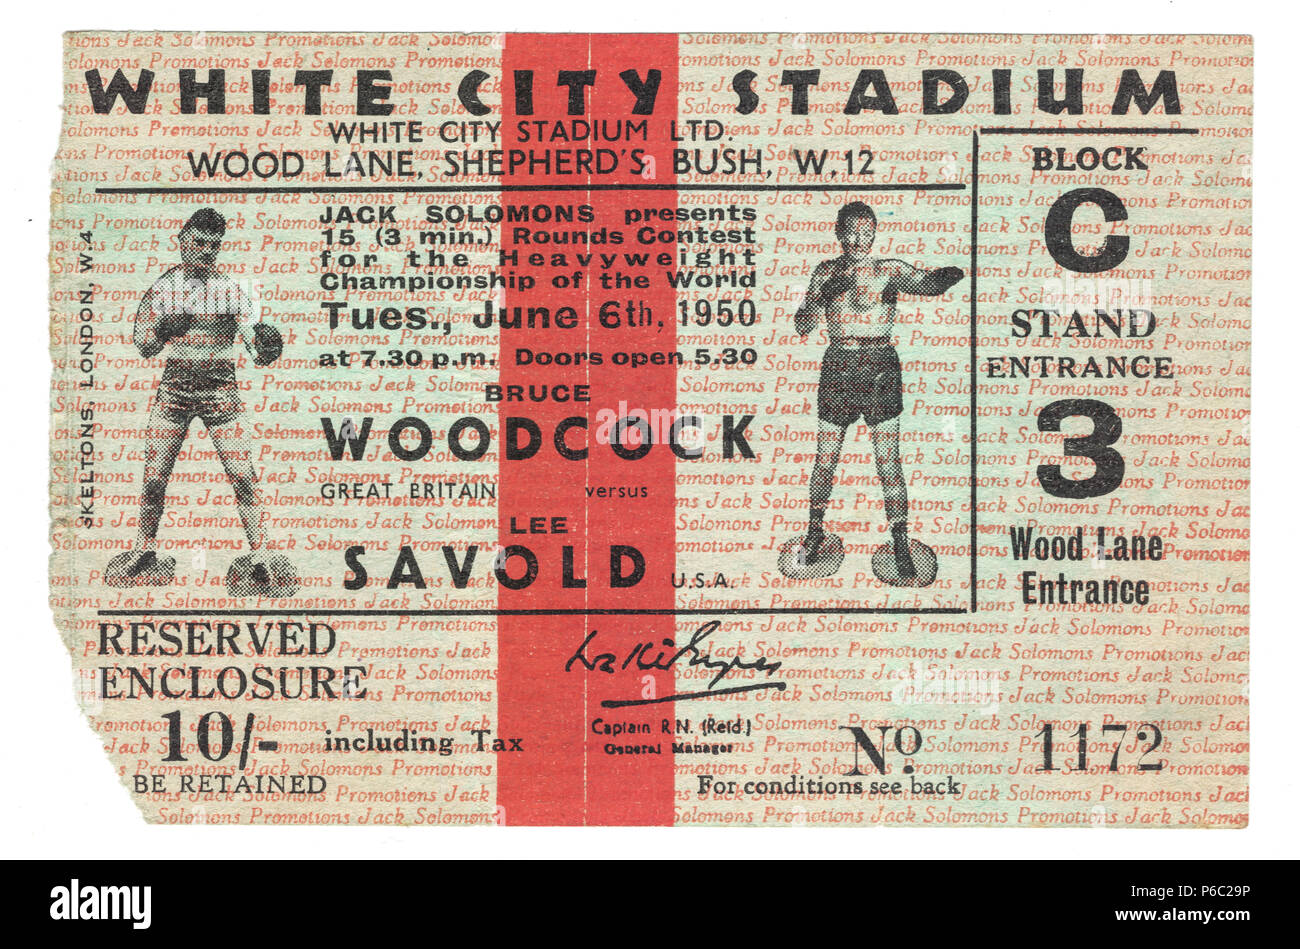 El Boxeo, billete para el campeonato de peso pesado del mundo, Bruce Woodcock vs Lee Savold, White City Stadium, London, UK 1950 Foto de stock